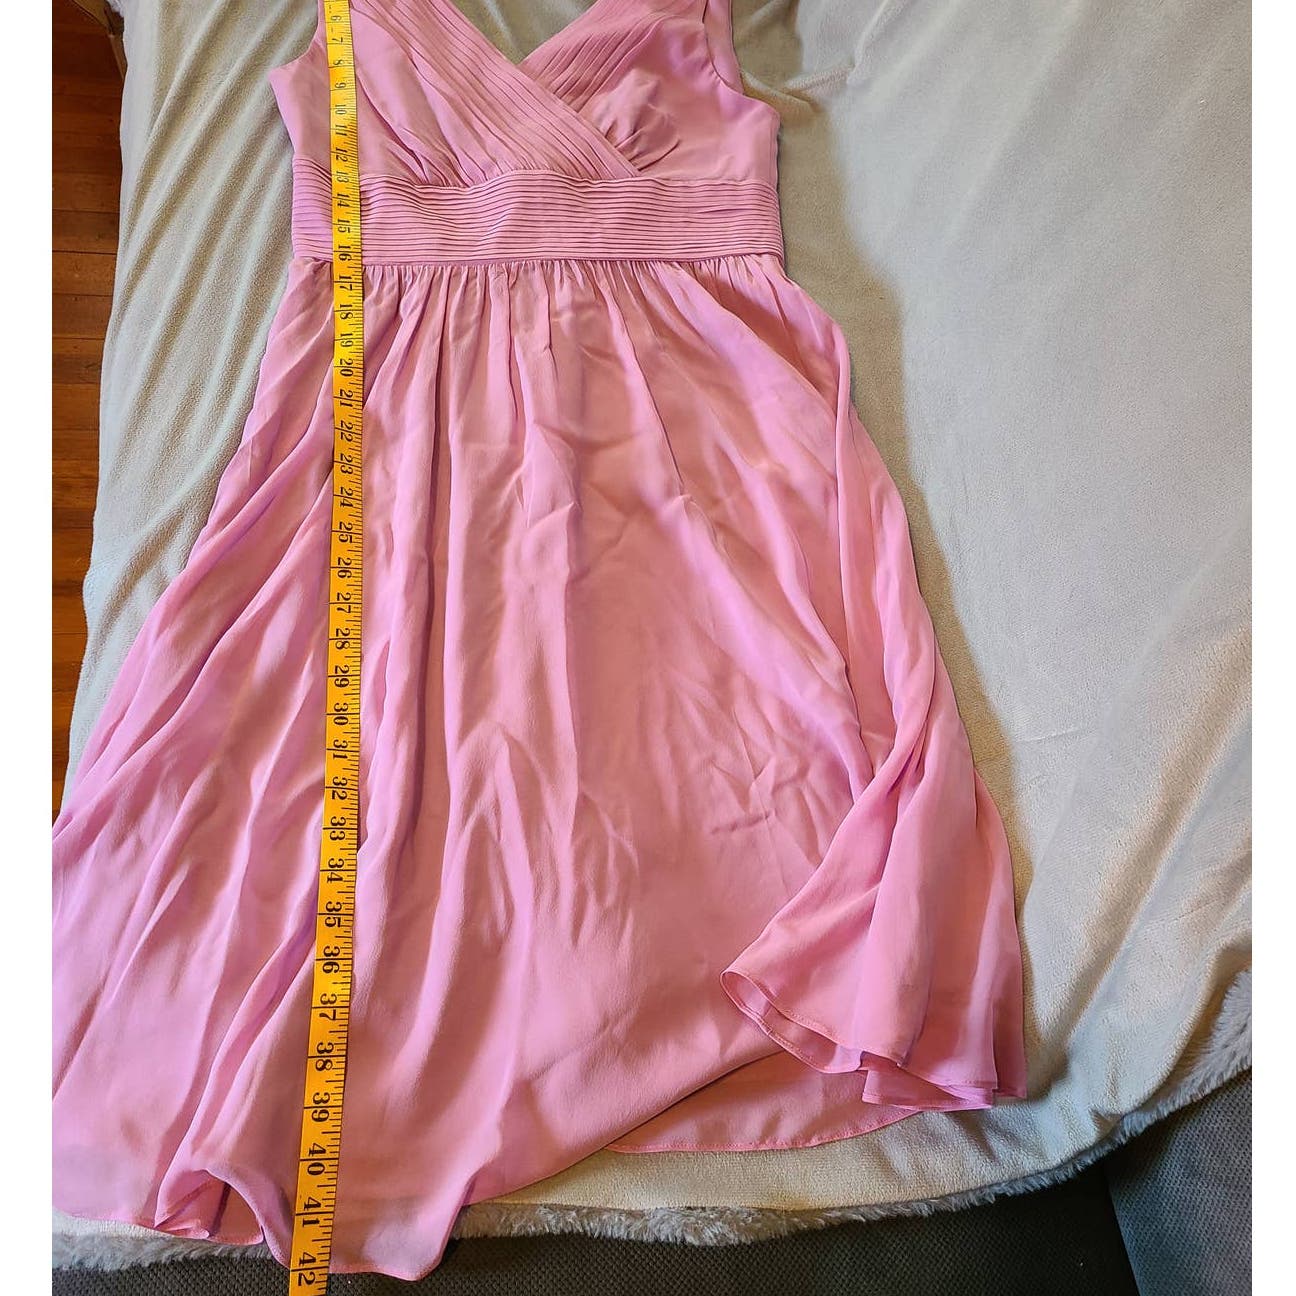 L.K. Bennett Lori Silk Dress Size 8